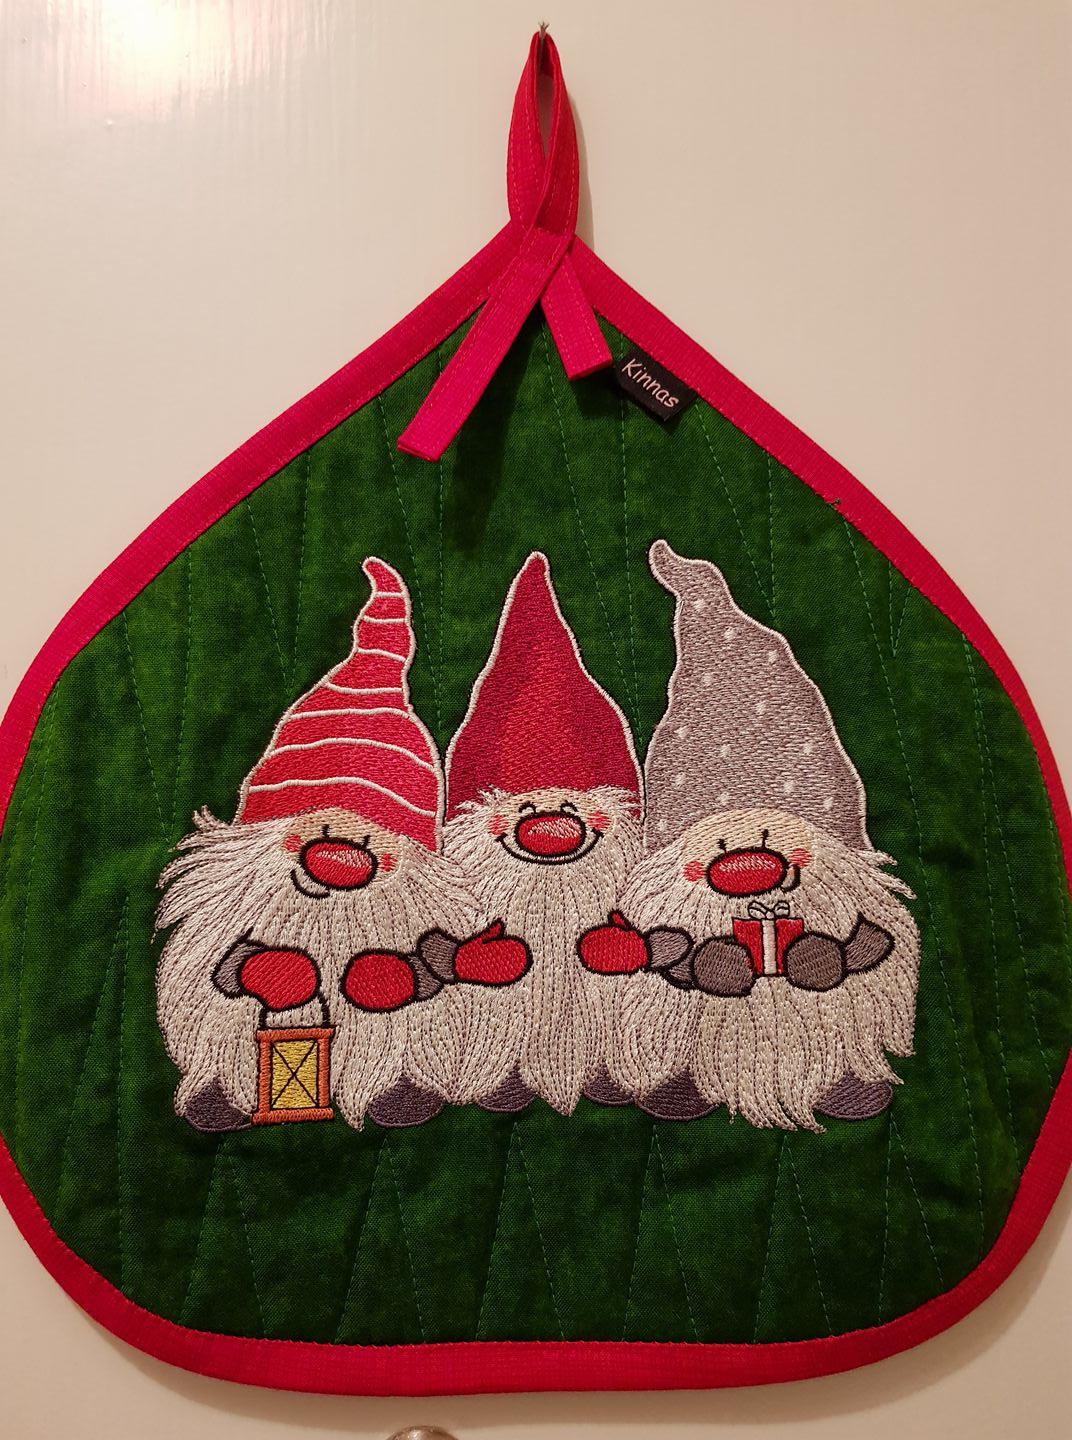 Embroidered potholder with Christmas dwarves design